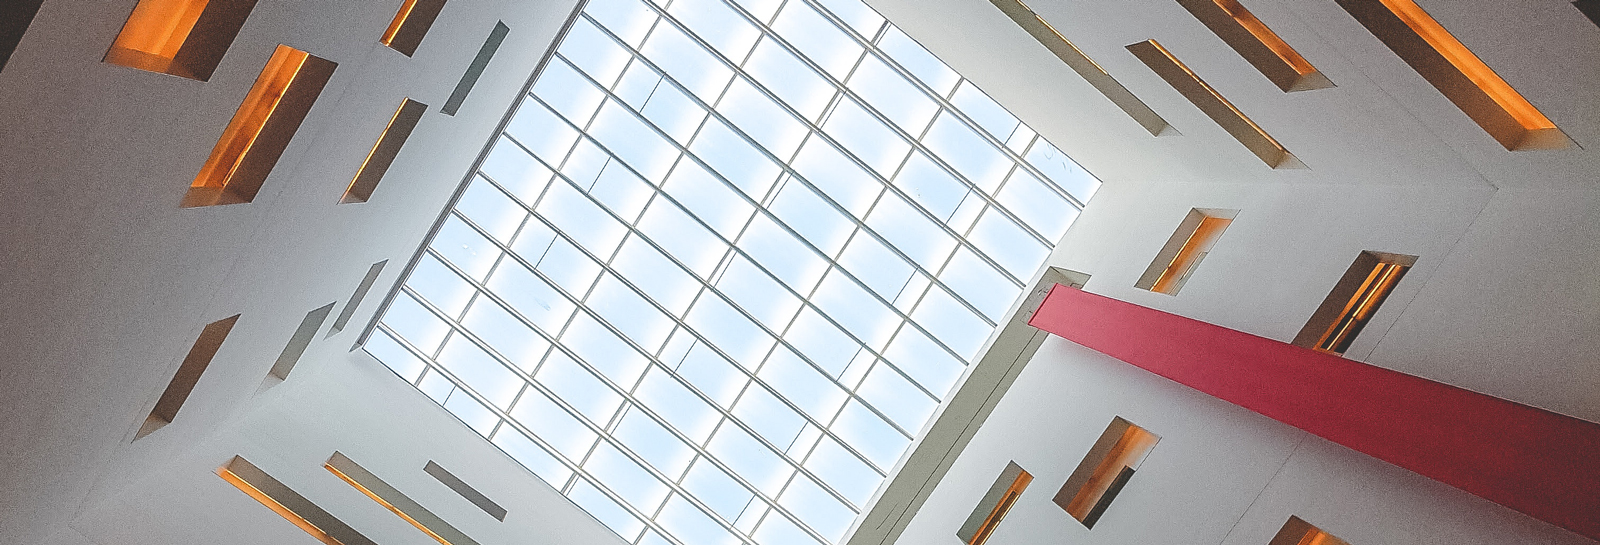 upwards shot of a skylight window in a building